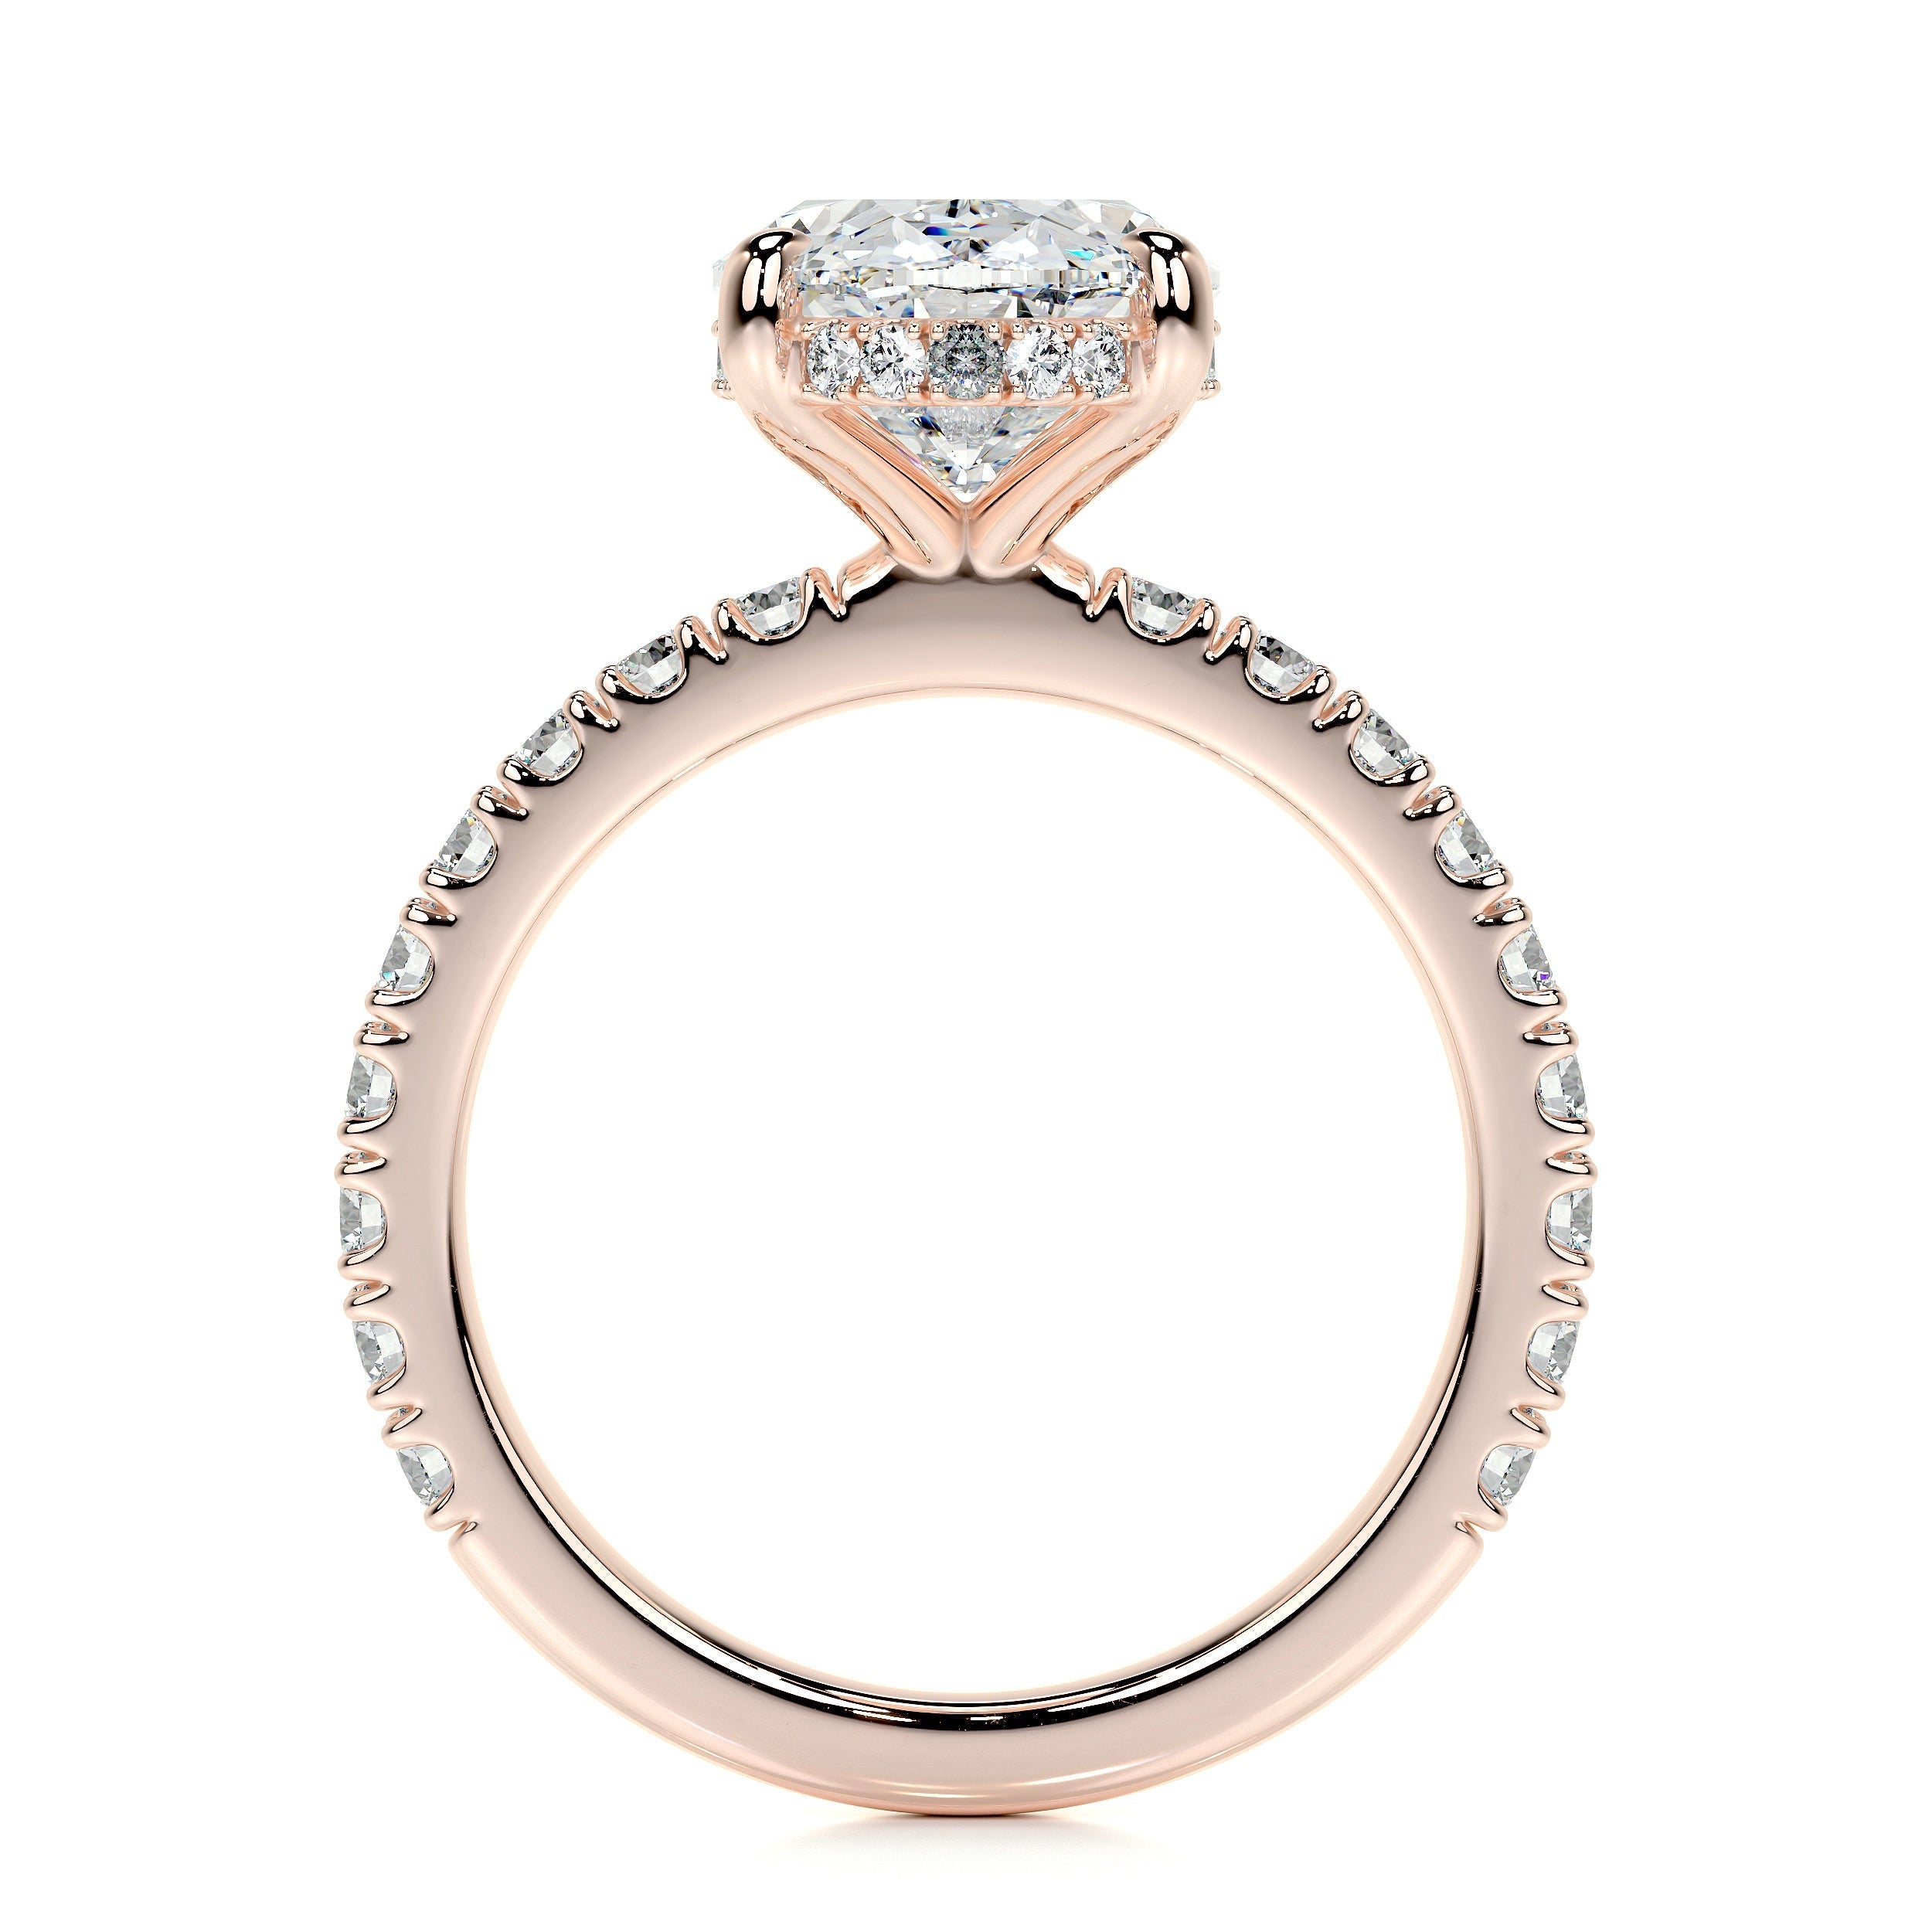 Lucy Lab Grown Diamond Ring   (3.5 Carat) -14K Rose Gold